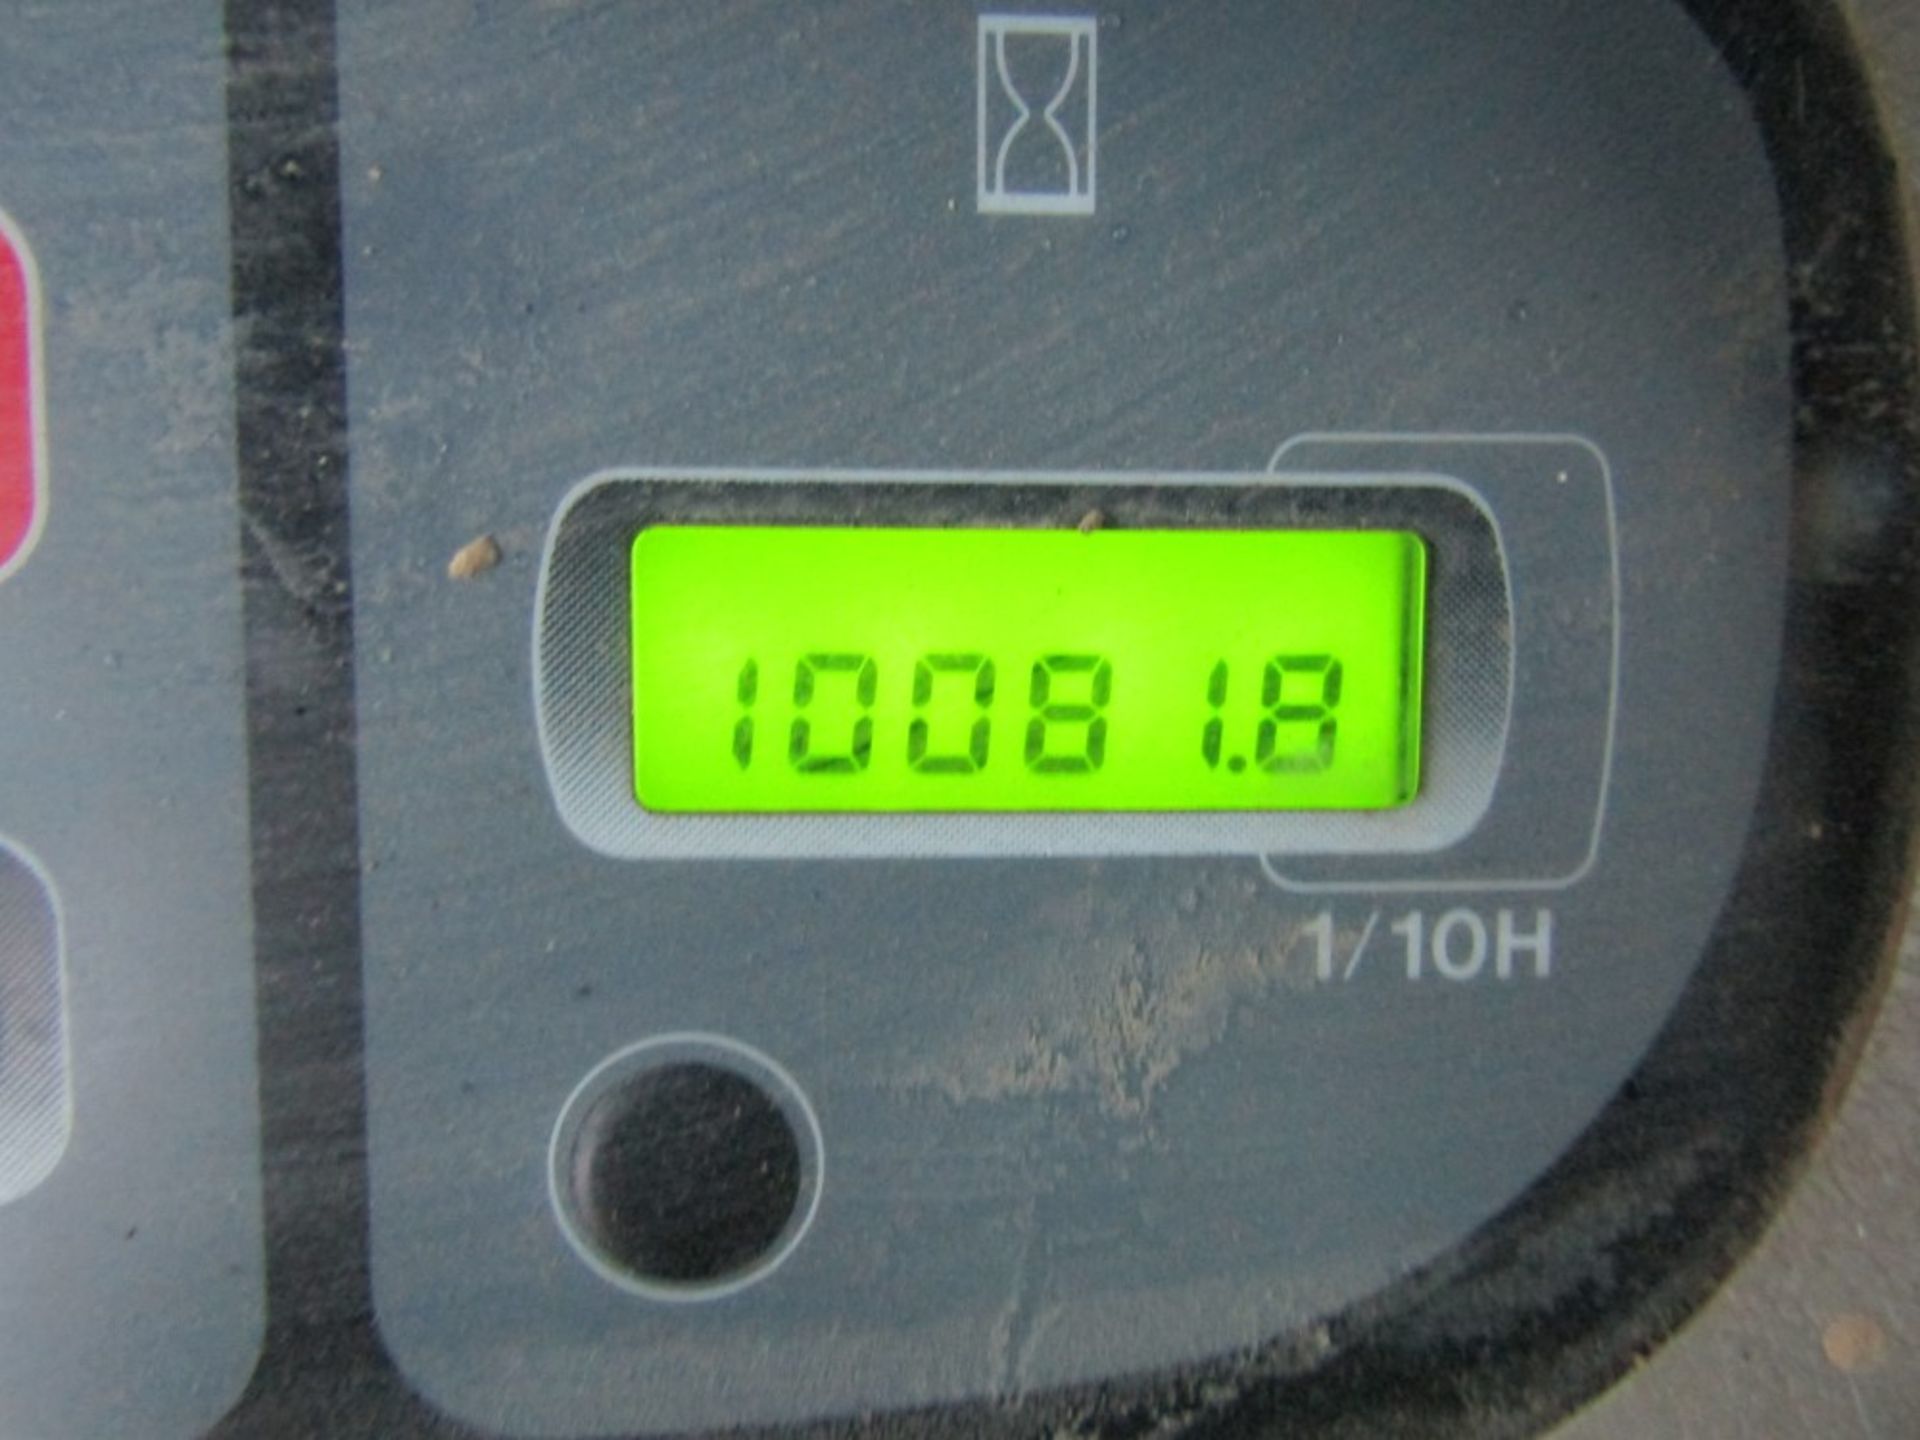 2006 CASE CX210 EXCAVATOR, 10081 HOURS NOT WARRANTED [+ VAT] - Image 7 of 7